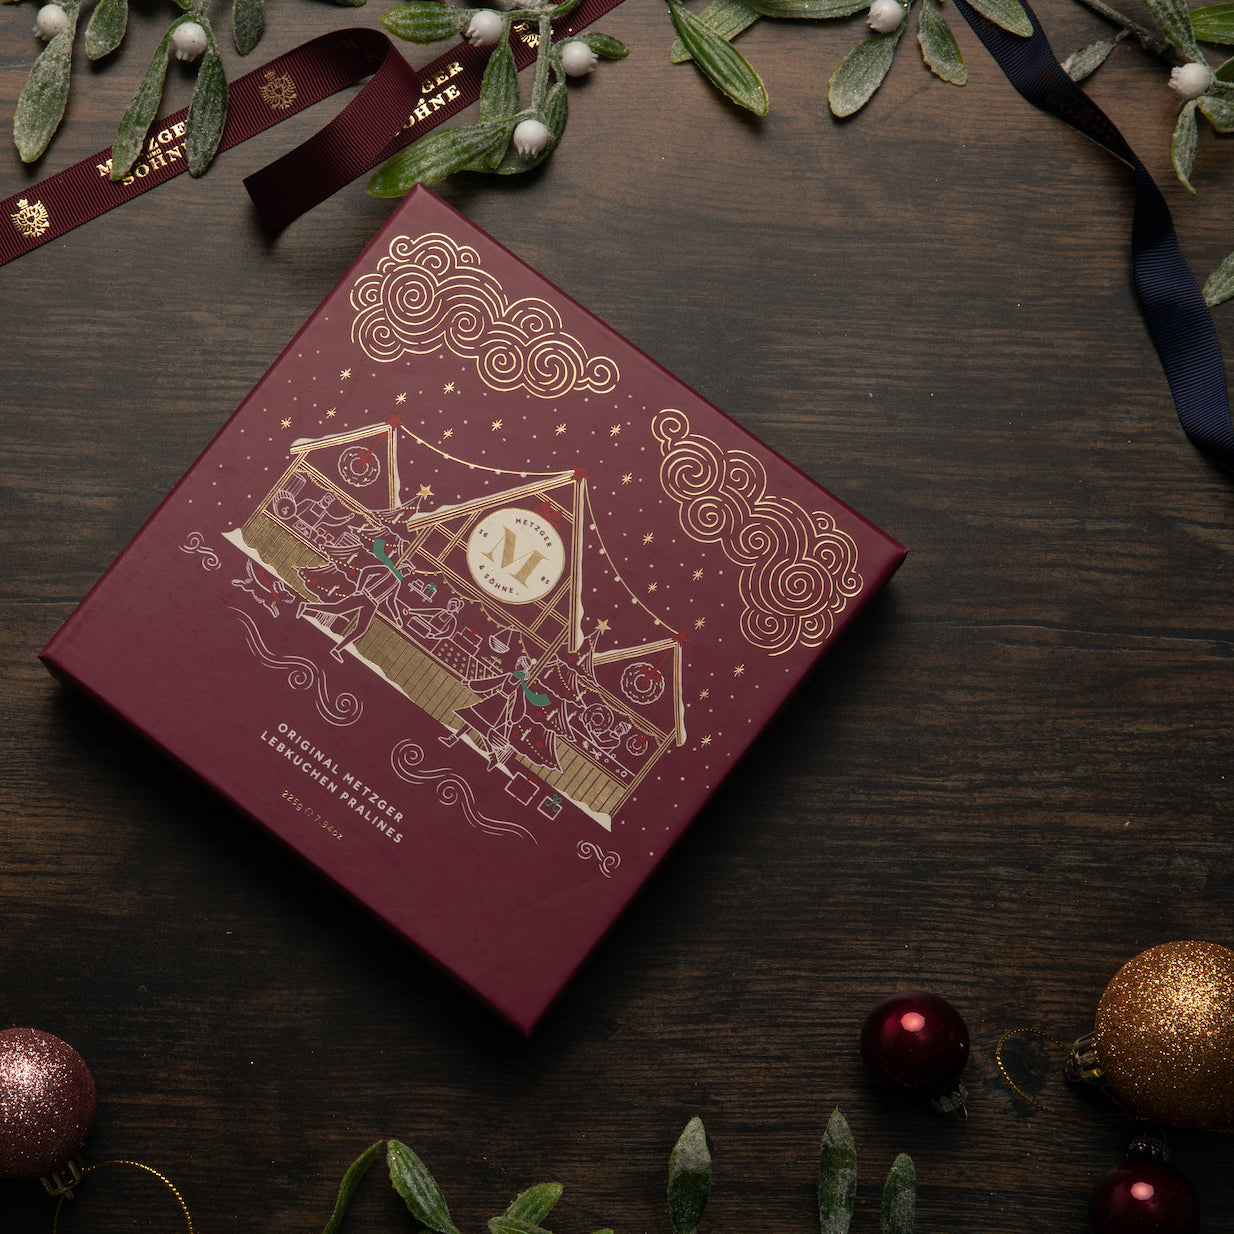 Diese exklusive Weihnachts Lebkuchen Pralinen Schachtel in grün mit hochwertigem Goldfoliendruck ist gefüllt mit 16 exquisiten, geschmackvoll verzierten Lebkuchenpralinen in einem ansprechende Muster.